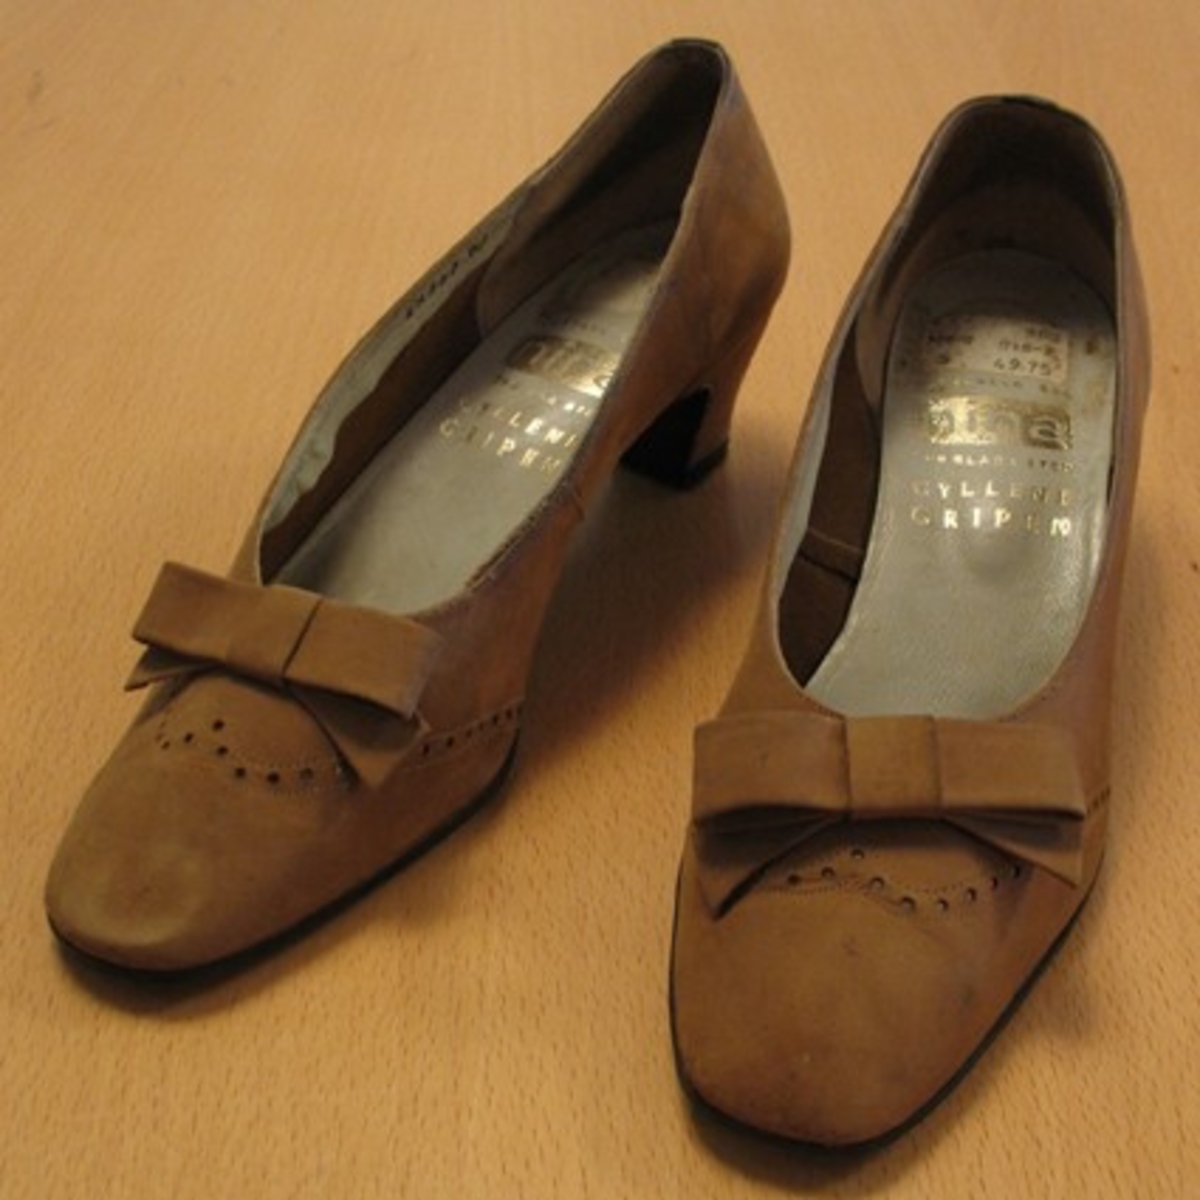 Ett par skor.

''Fotvänlig sko. Nina för glada steg. Gyllene Gripen''.

Damsko med halvhög klack, pumpsmodell med rosett.